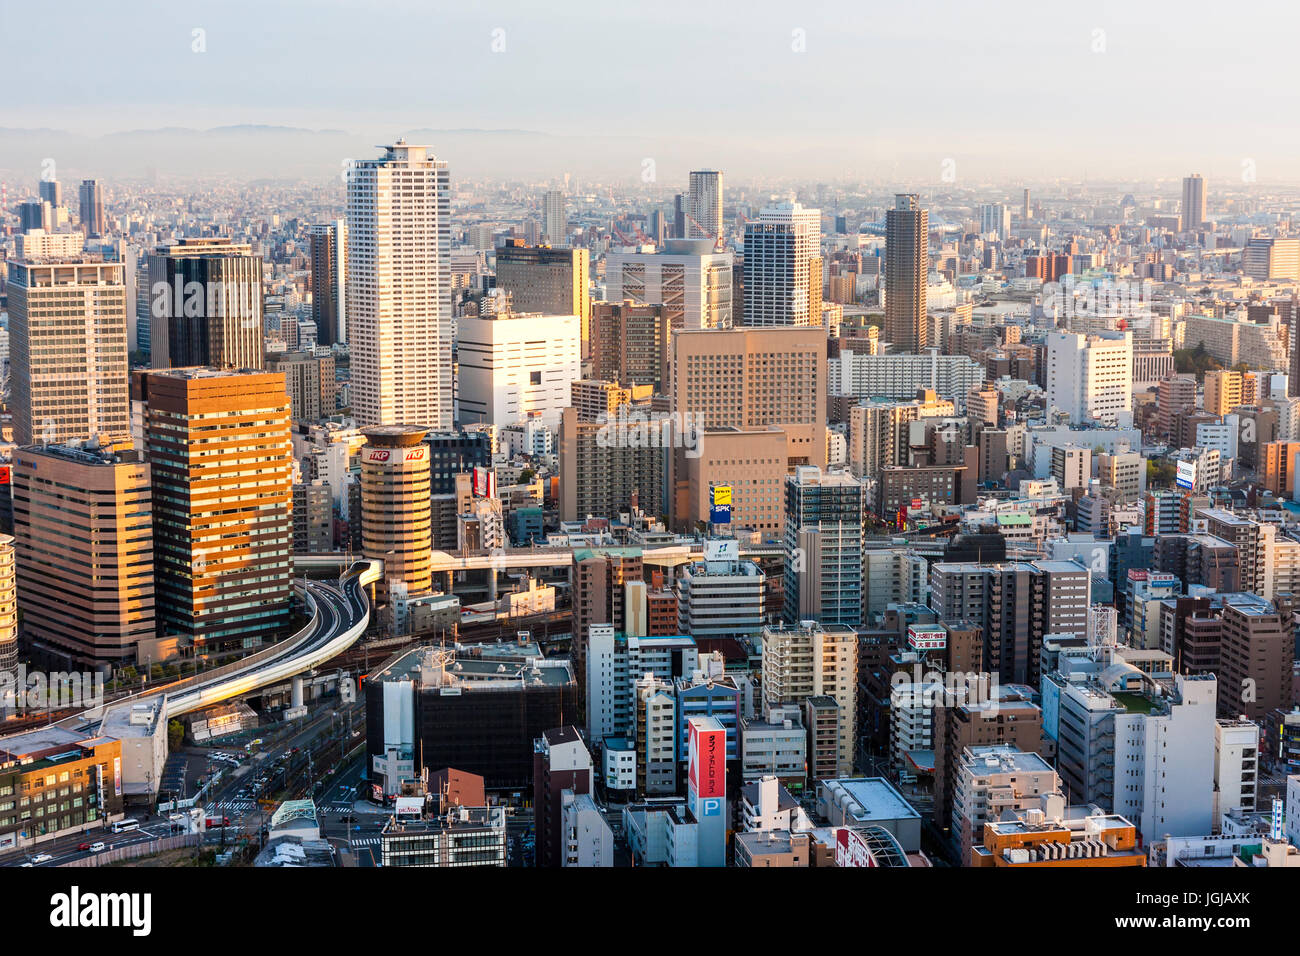 Vue du haut des gratte-ciel Umeda, à Osaka. Ville illuminée par la lumière au coucher du soleil, heure d'or. Hôtels et bureaux de grande hauteur, au-delà des montagnes brumeuses. Banque D'Images